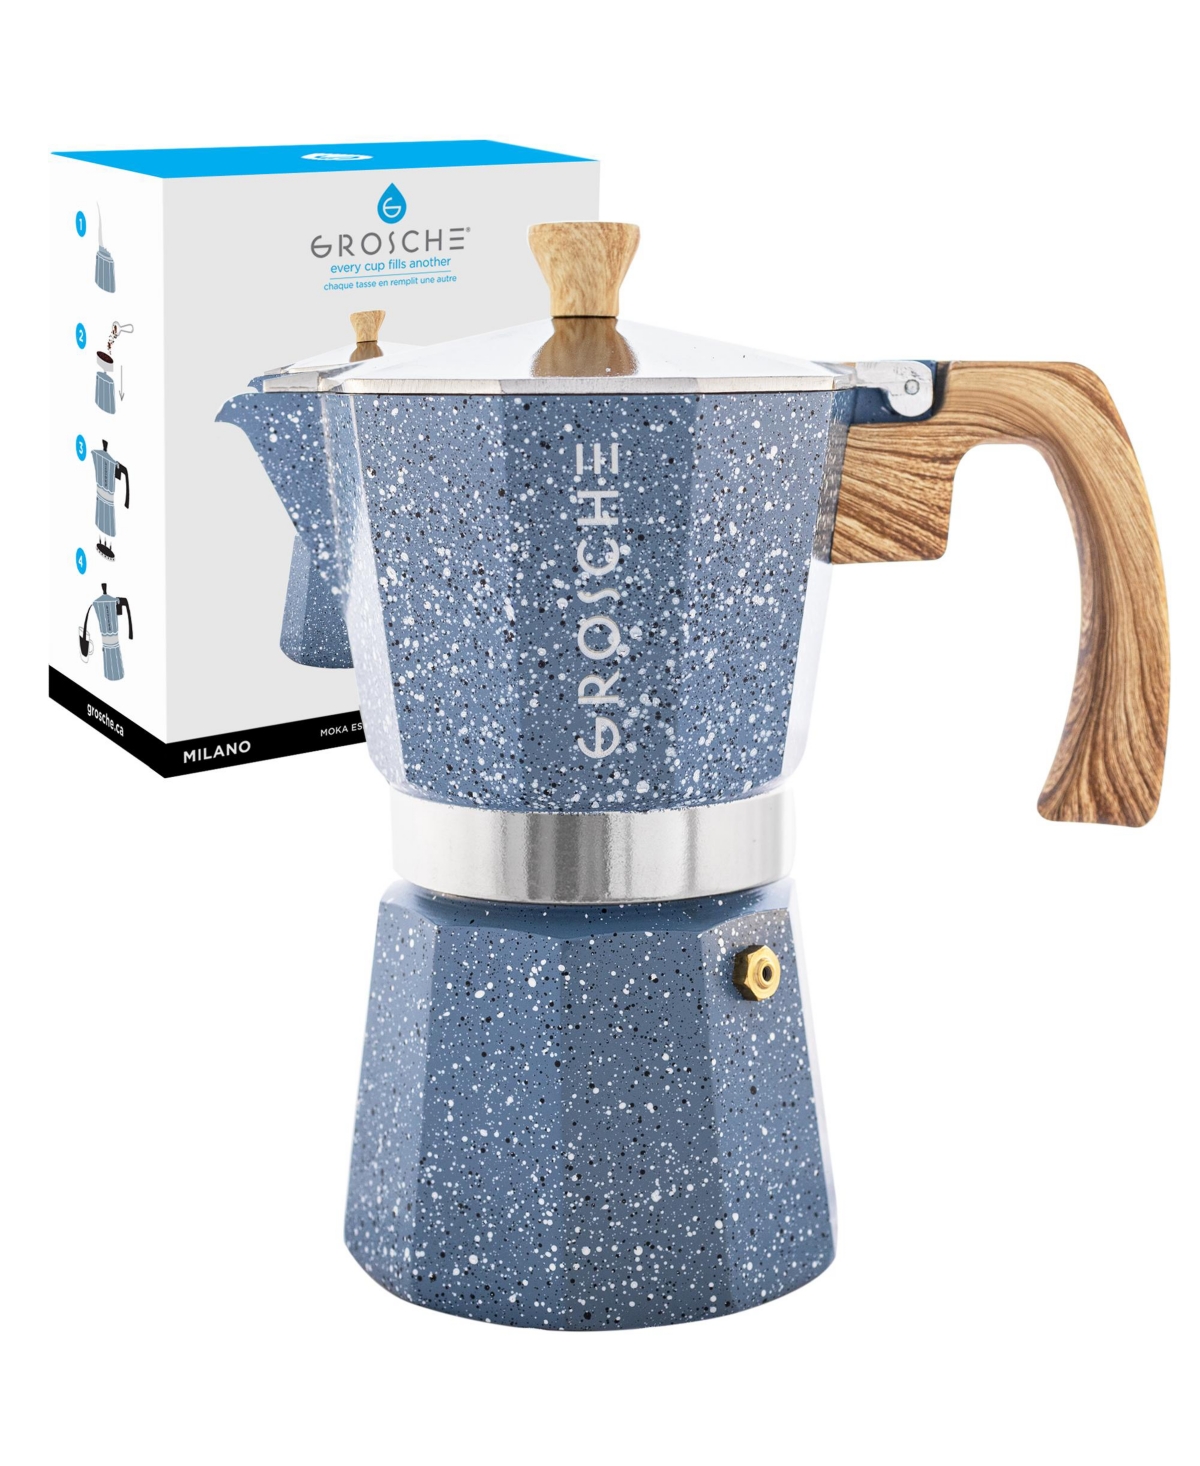 Grosche Milano Stovetop Espresso Maker Moka Pot 9 Espresso Cup